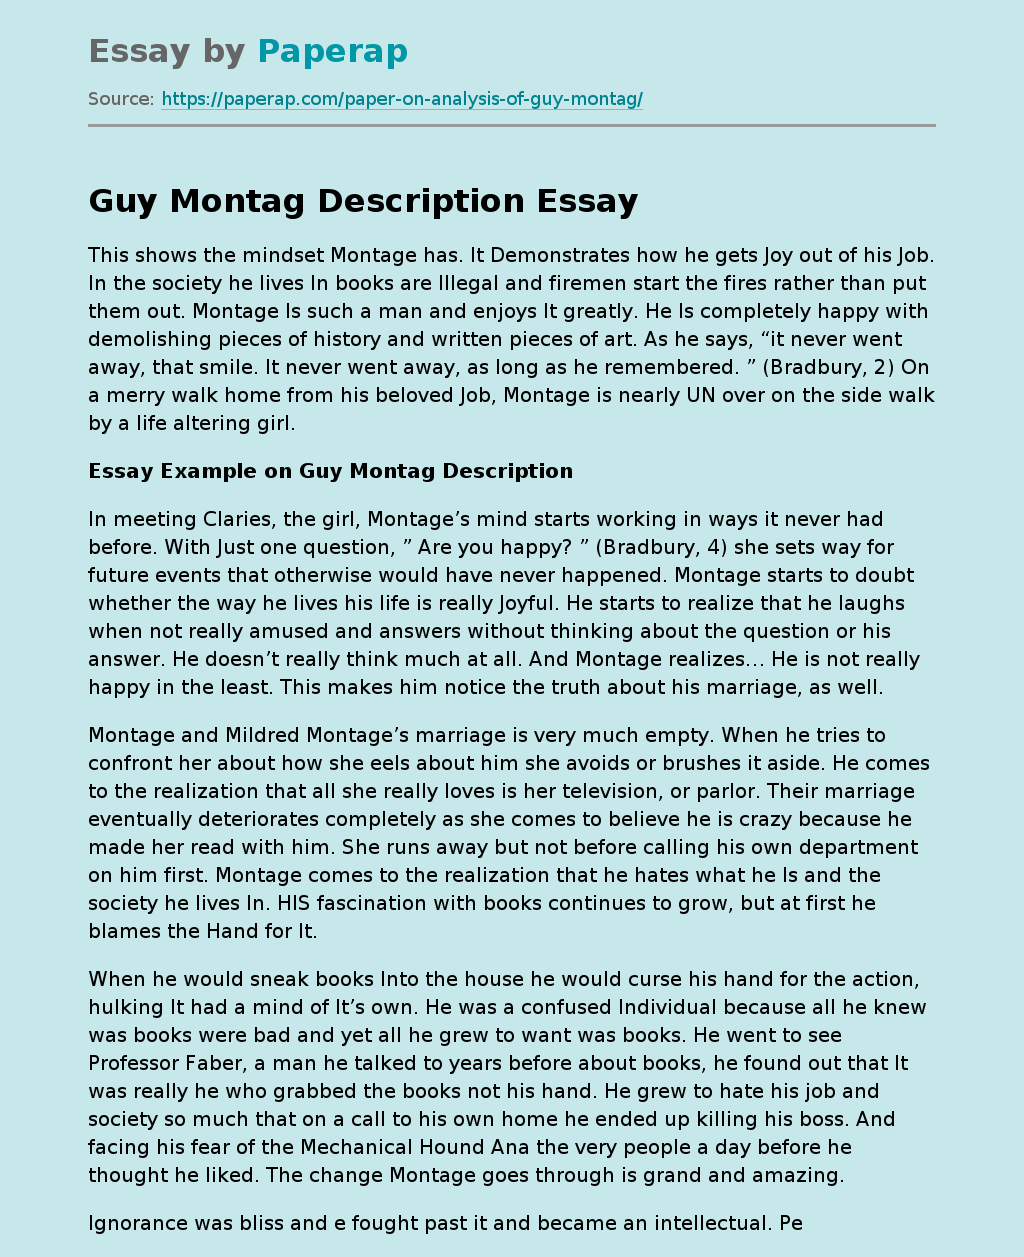 Essay Example on Guy Montag Description